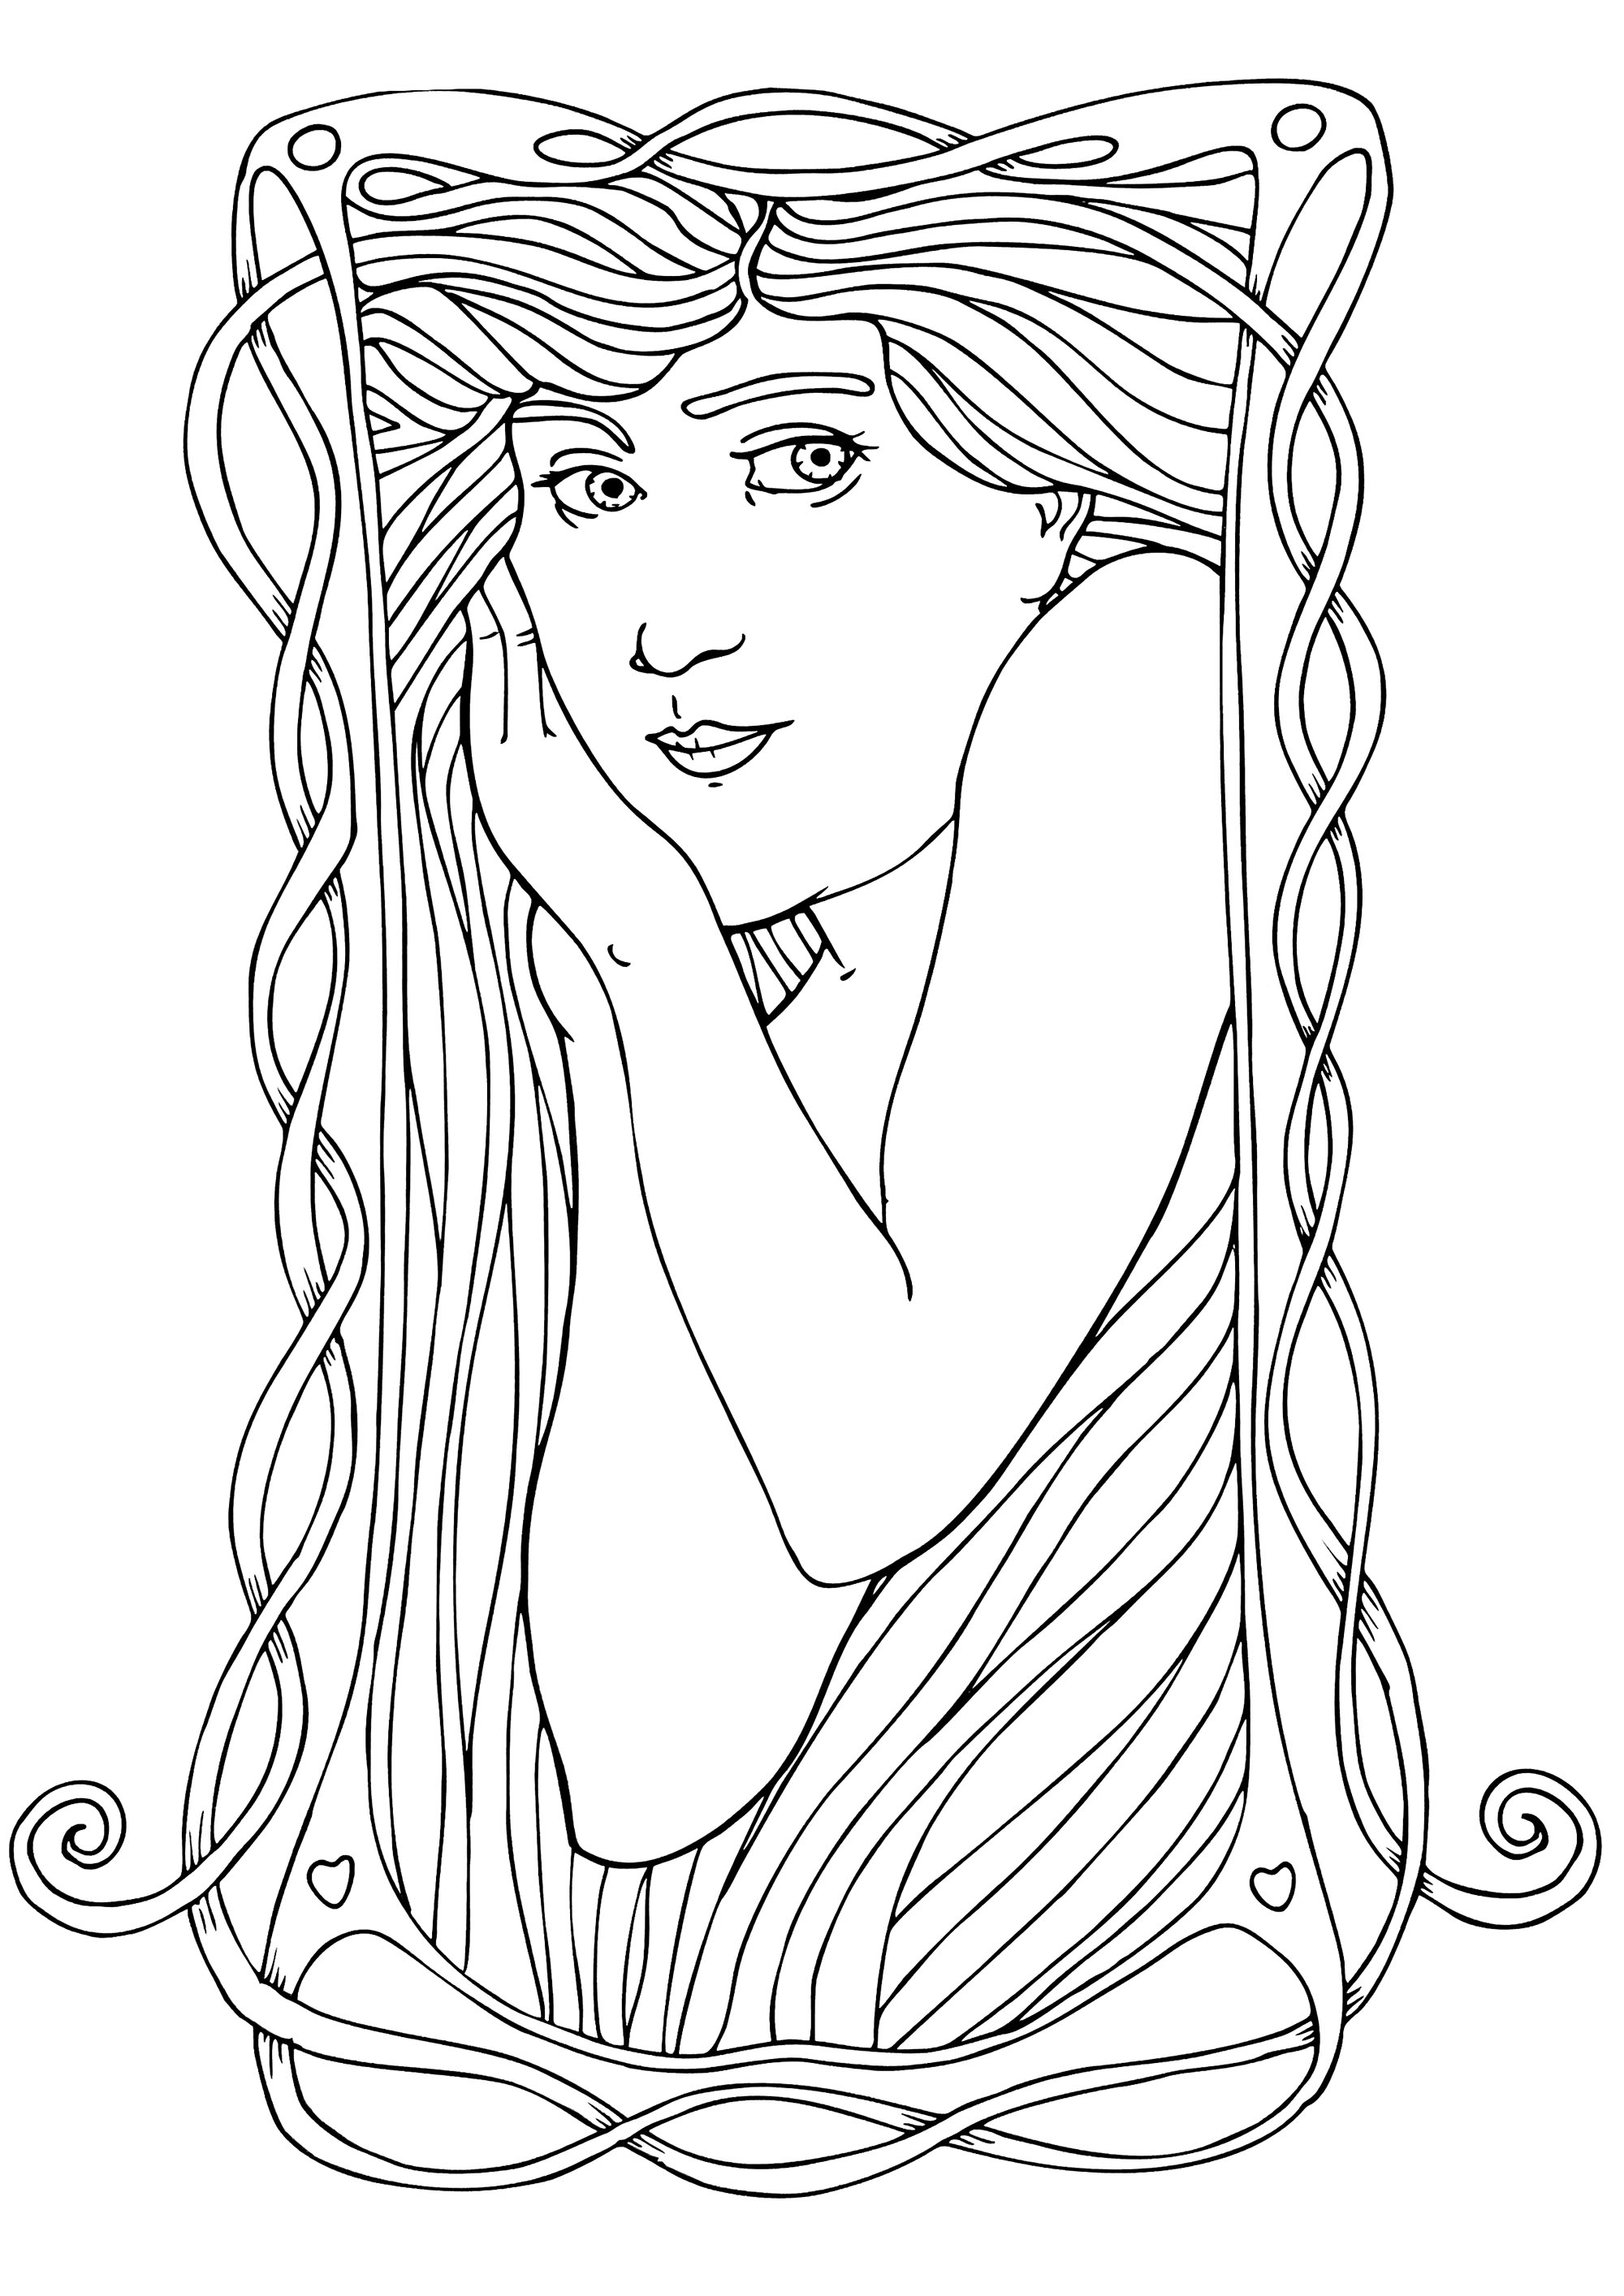 Darstellung einer Frau im Jugendstil, die den Stil von Alfons Mucha wiedergibt, mit wenigen Details